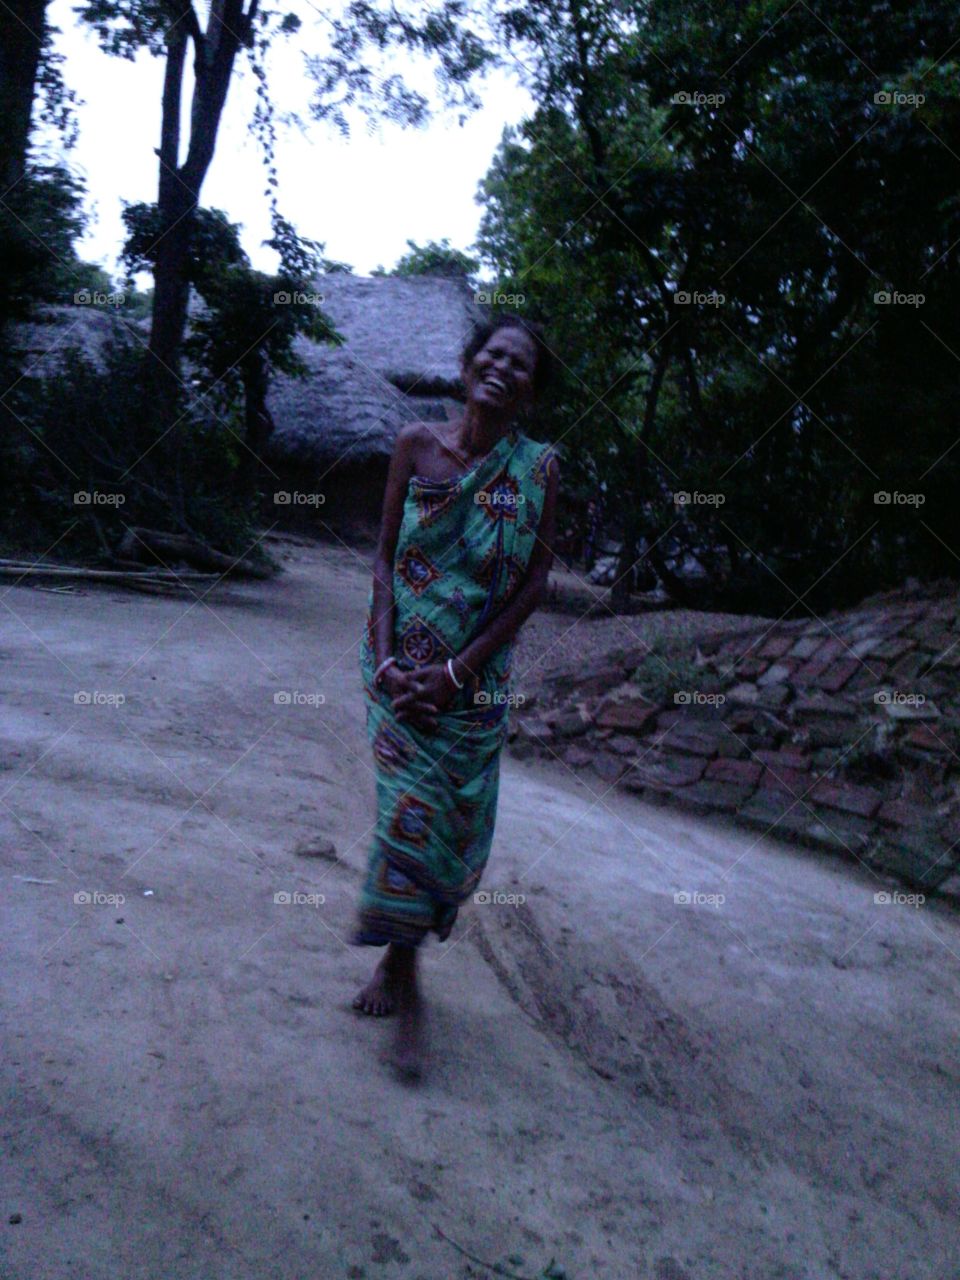 Smiling woman in sari